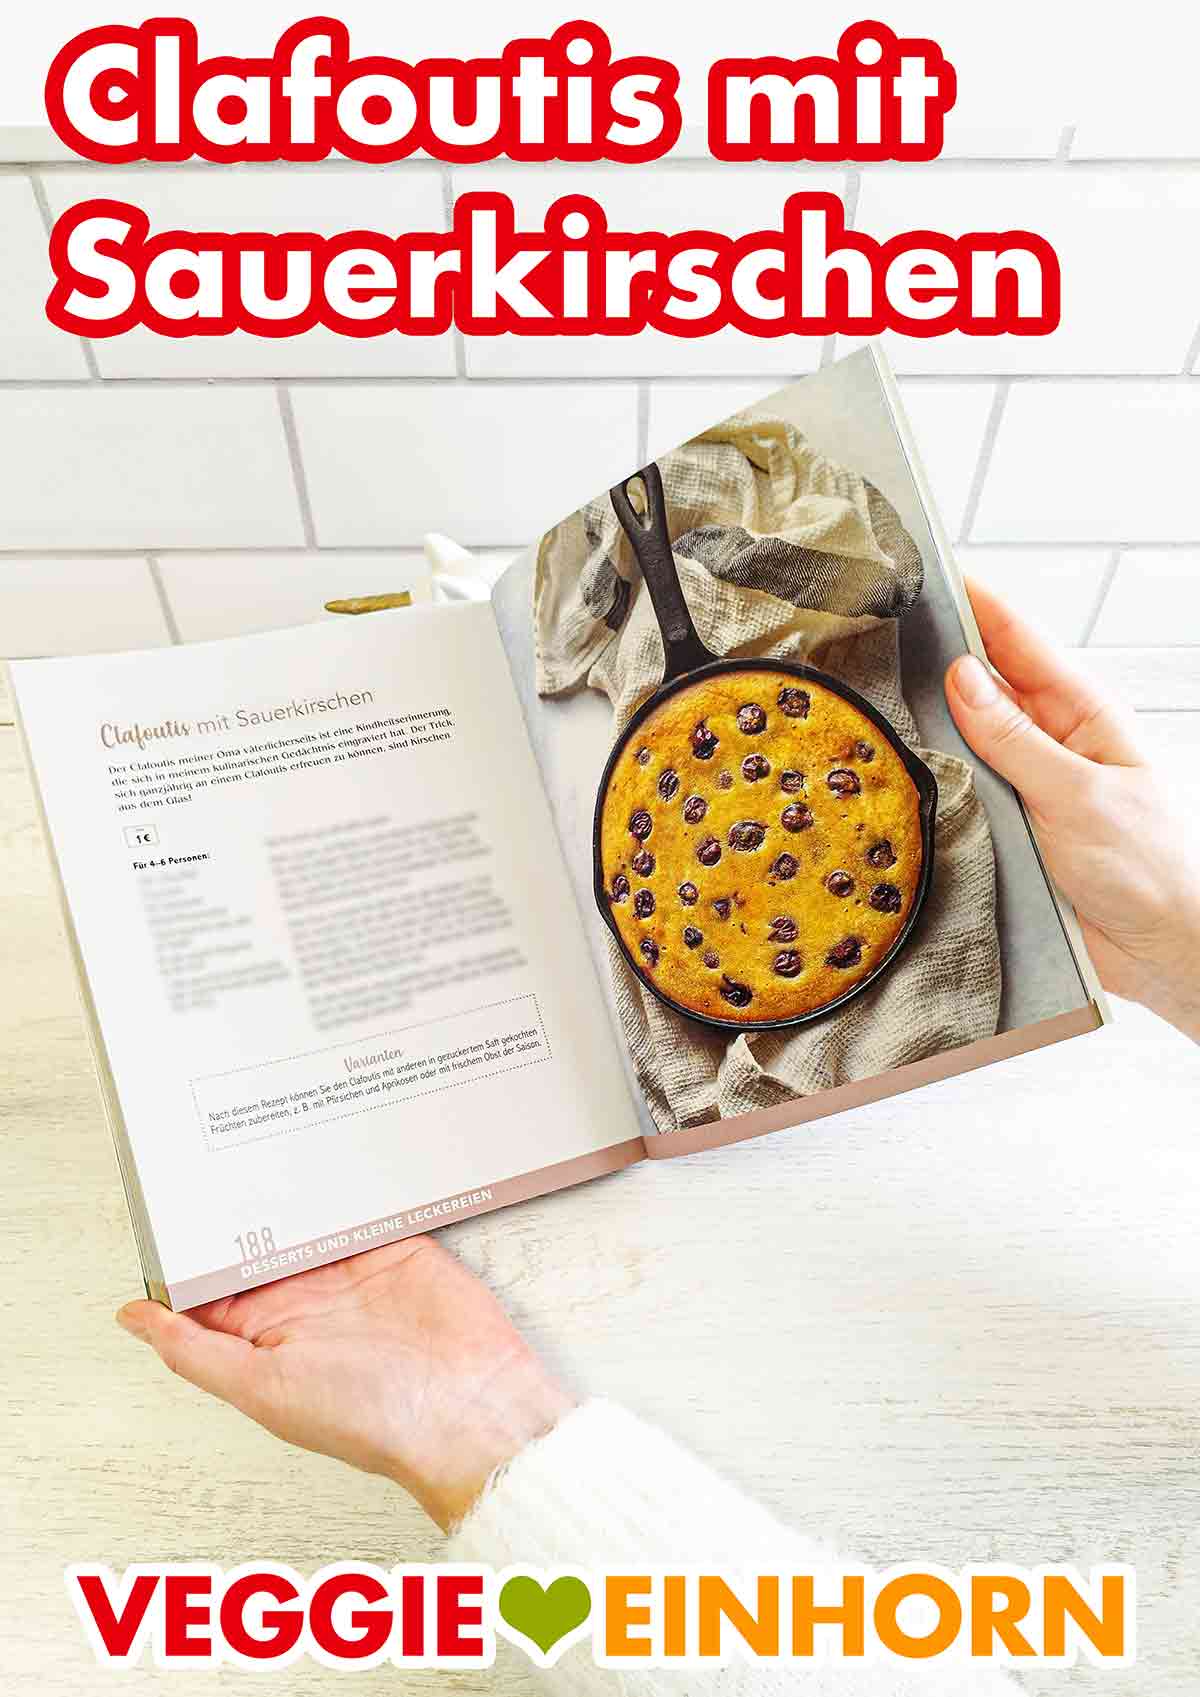 Clafoutis mit Sauerkirschen im Kochbuch Vegan und Günstig von Marie Laforêt